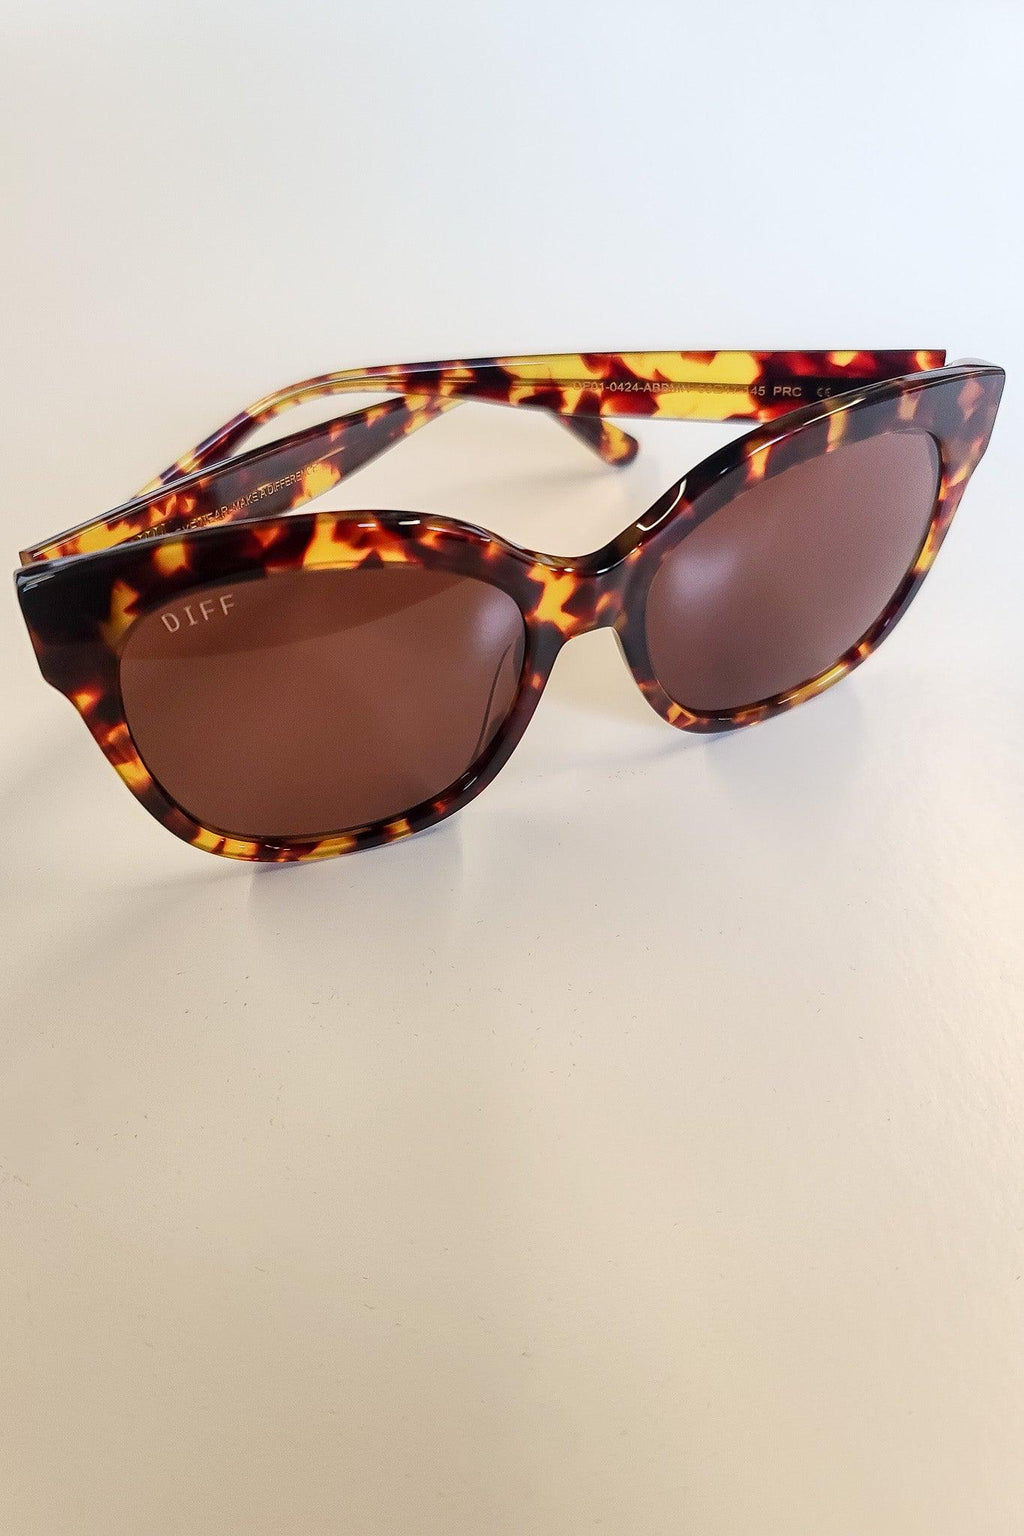 Maya Sunglasses - Revir